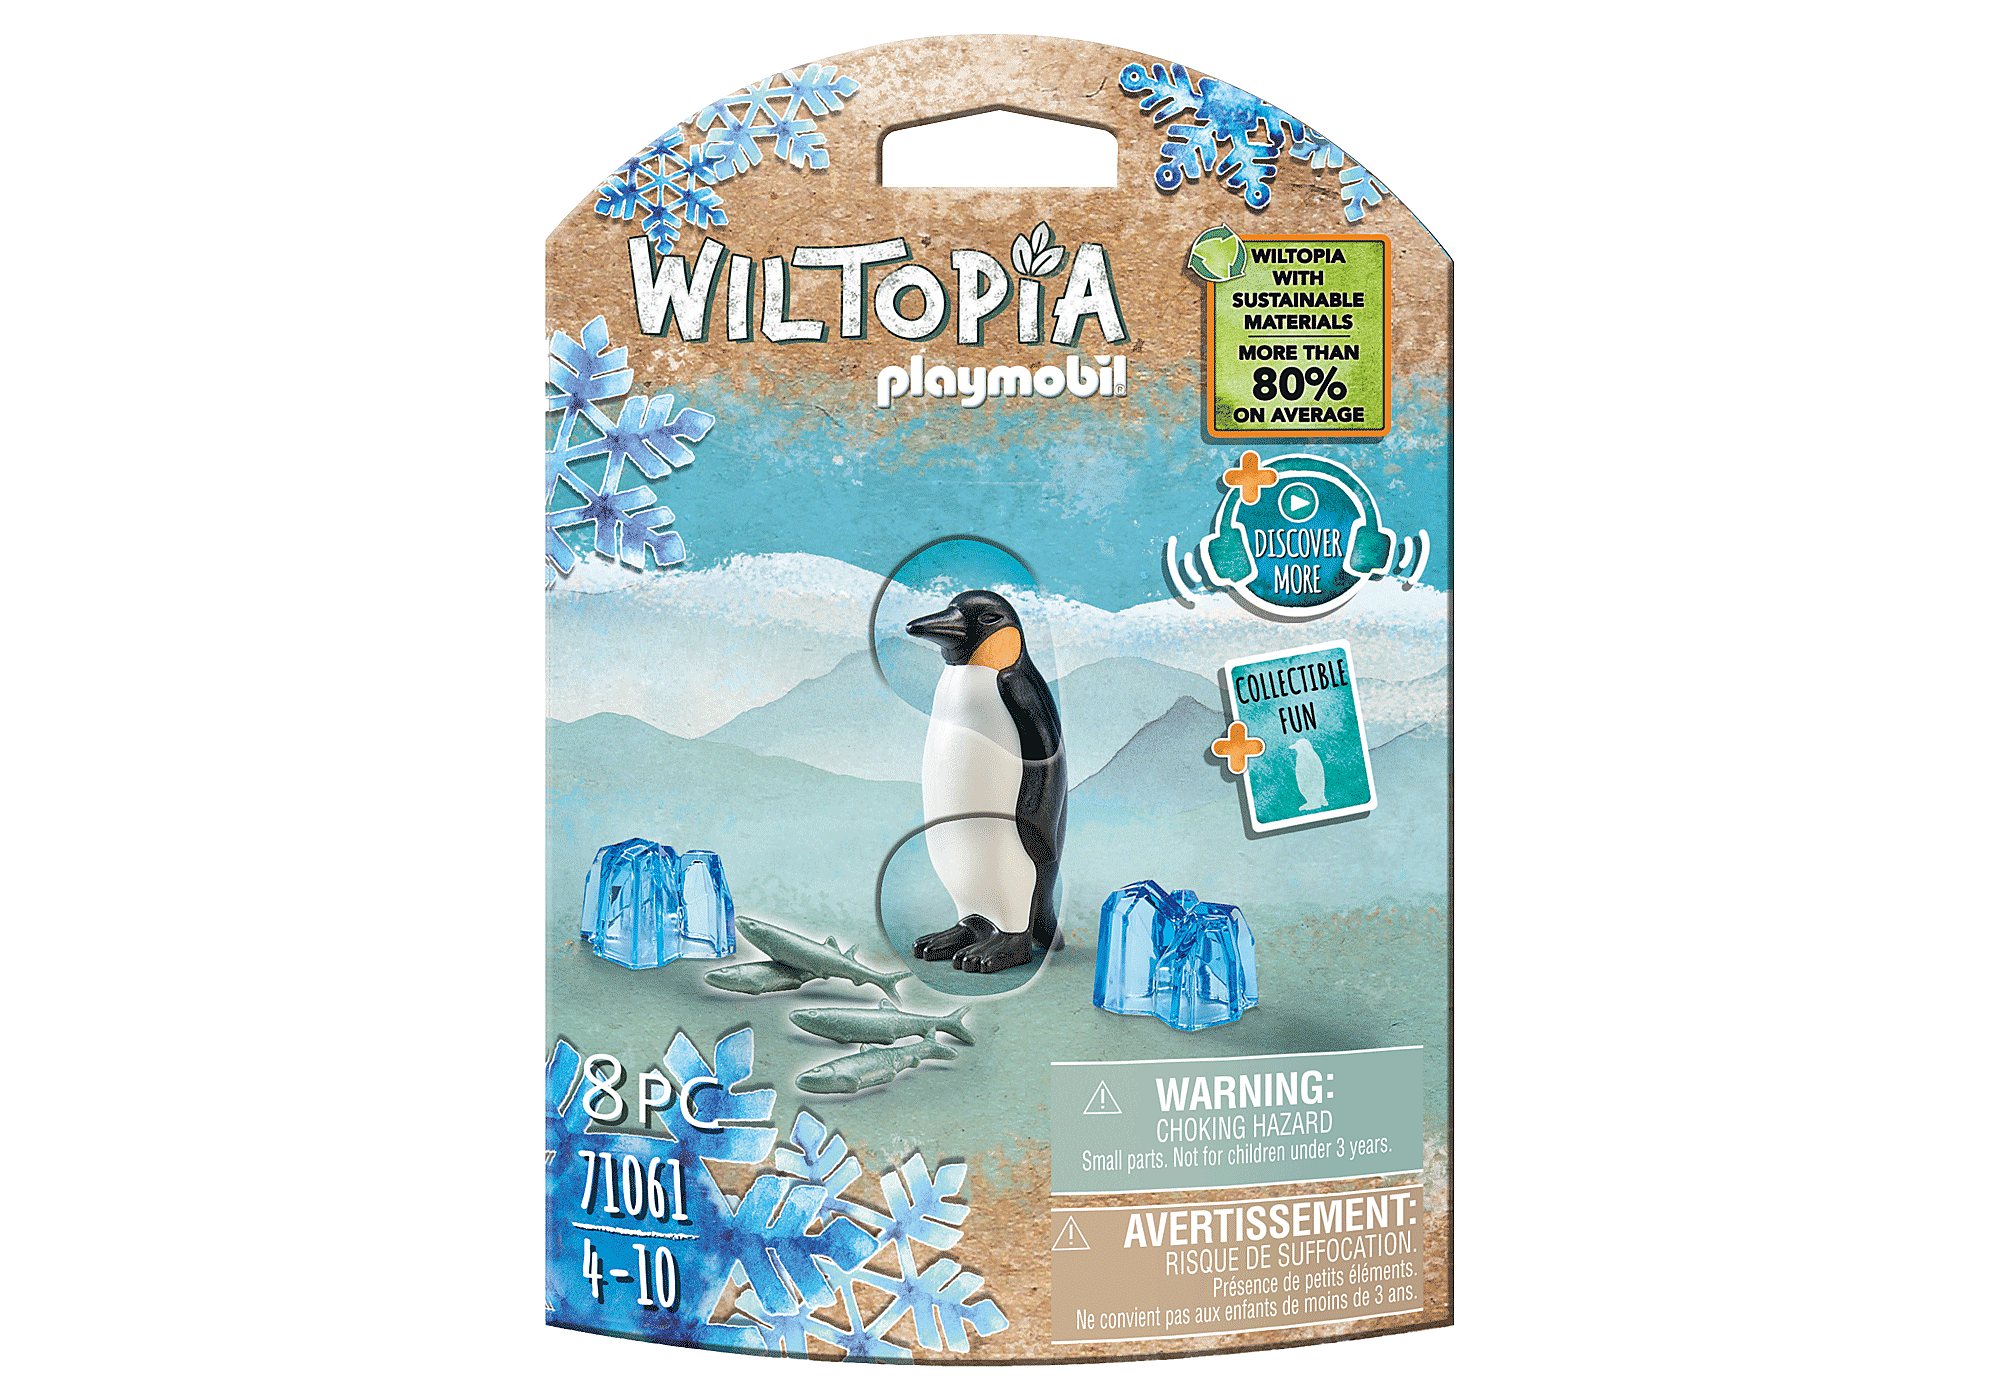 Wiltopia - Emperor Penguin - 71061